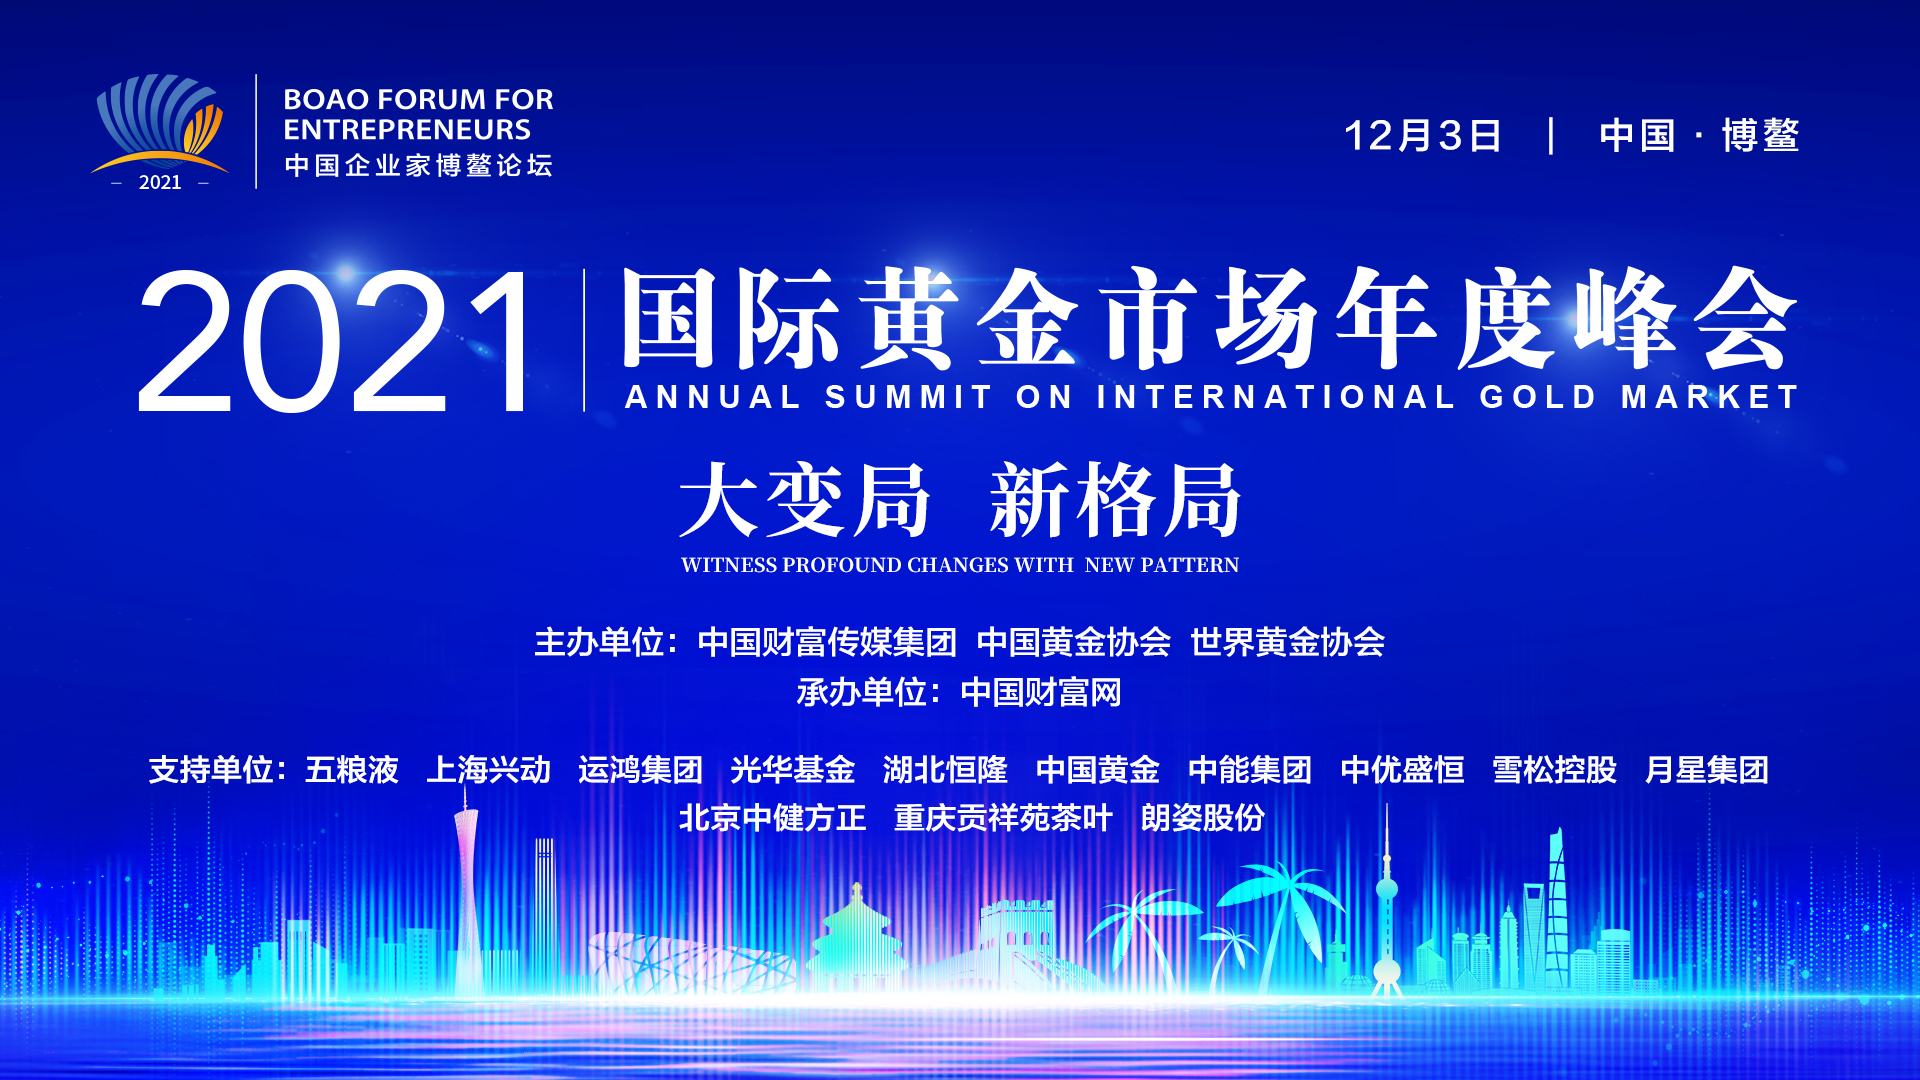 2021中国企业家博鳌论坛·国际黄金市场年度峰会